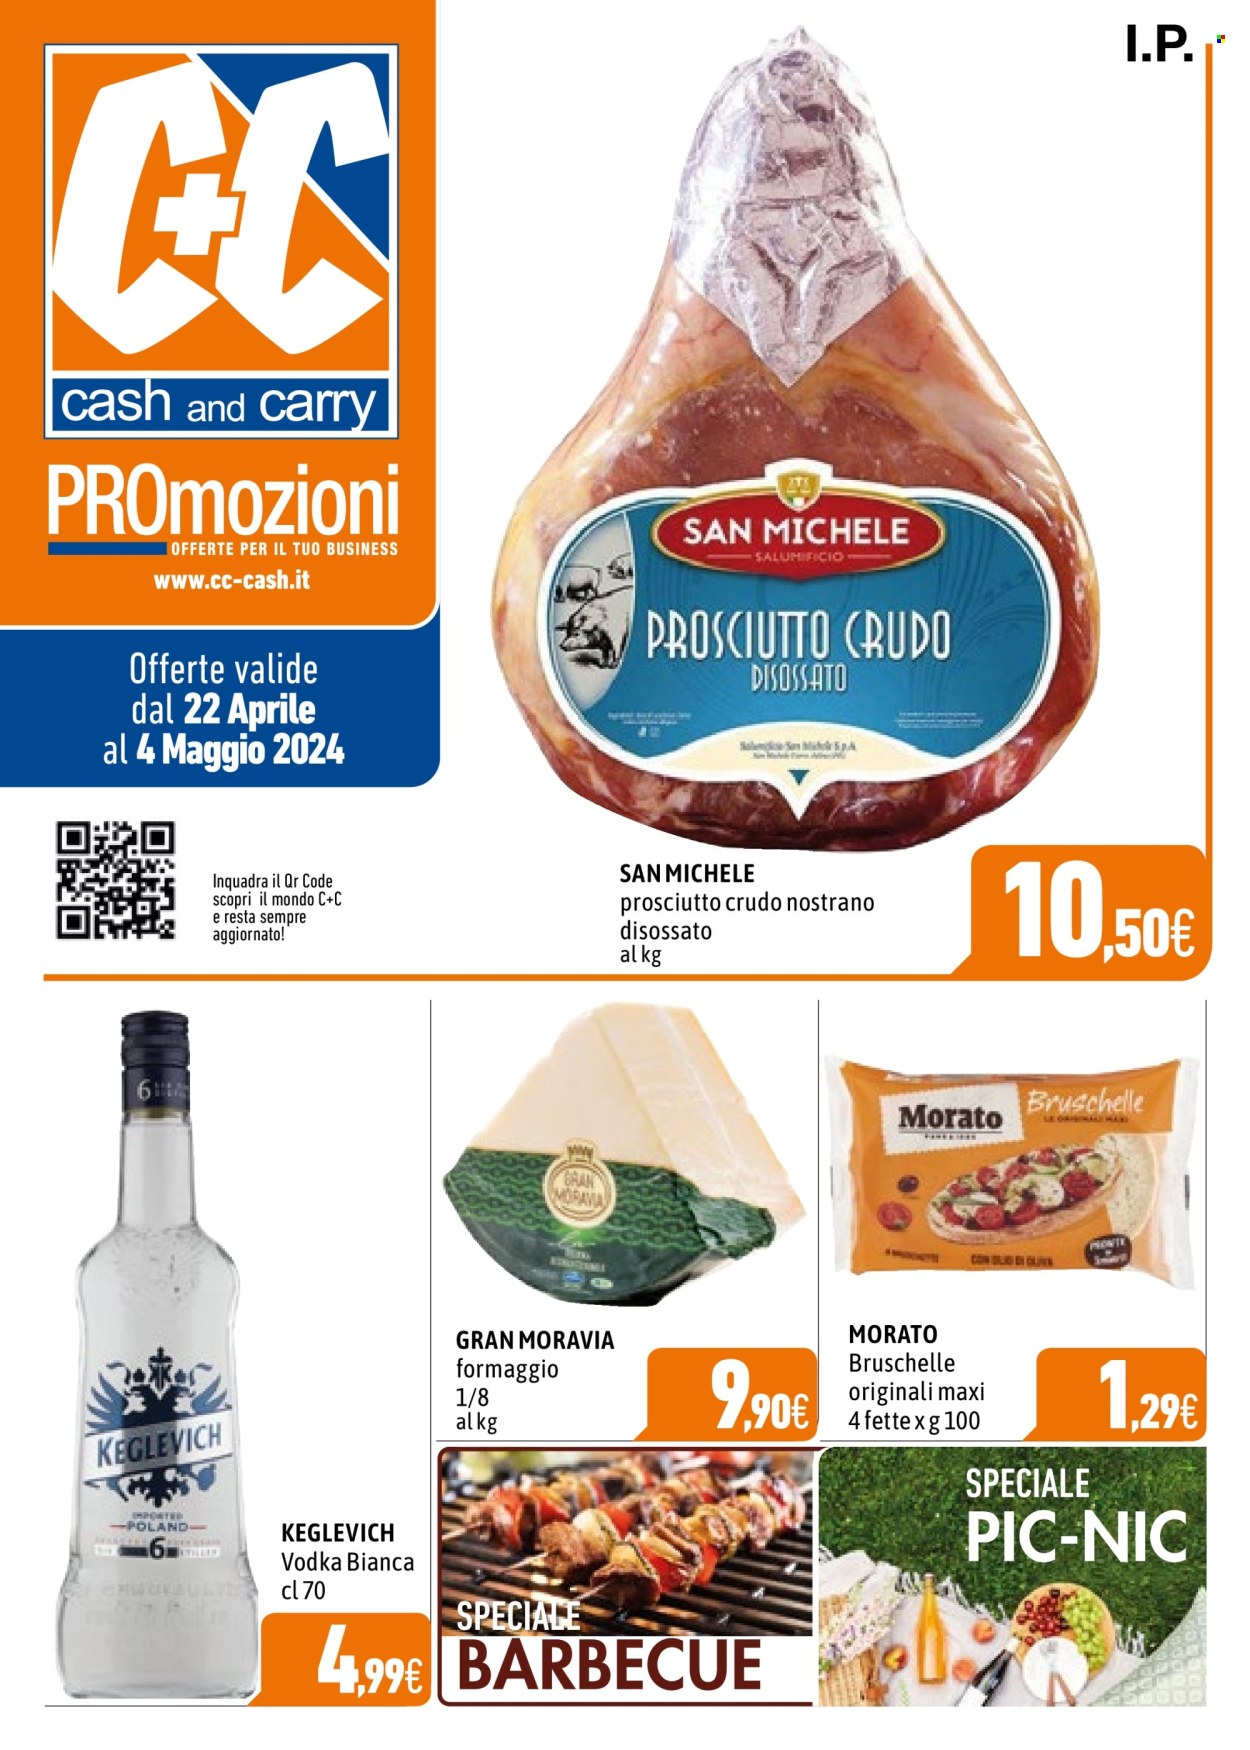 thumbnail - Volantino C+C Cash & Carry - 22/4/2024 - 4/5/2024 - Prodotti in offerta - Morato, prosciutto, prosciutto crudo, formaggio, vodka, Keglevich, barbecue. Pagina 1.